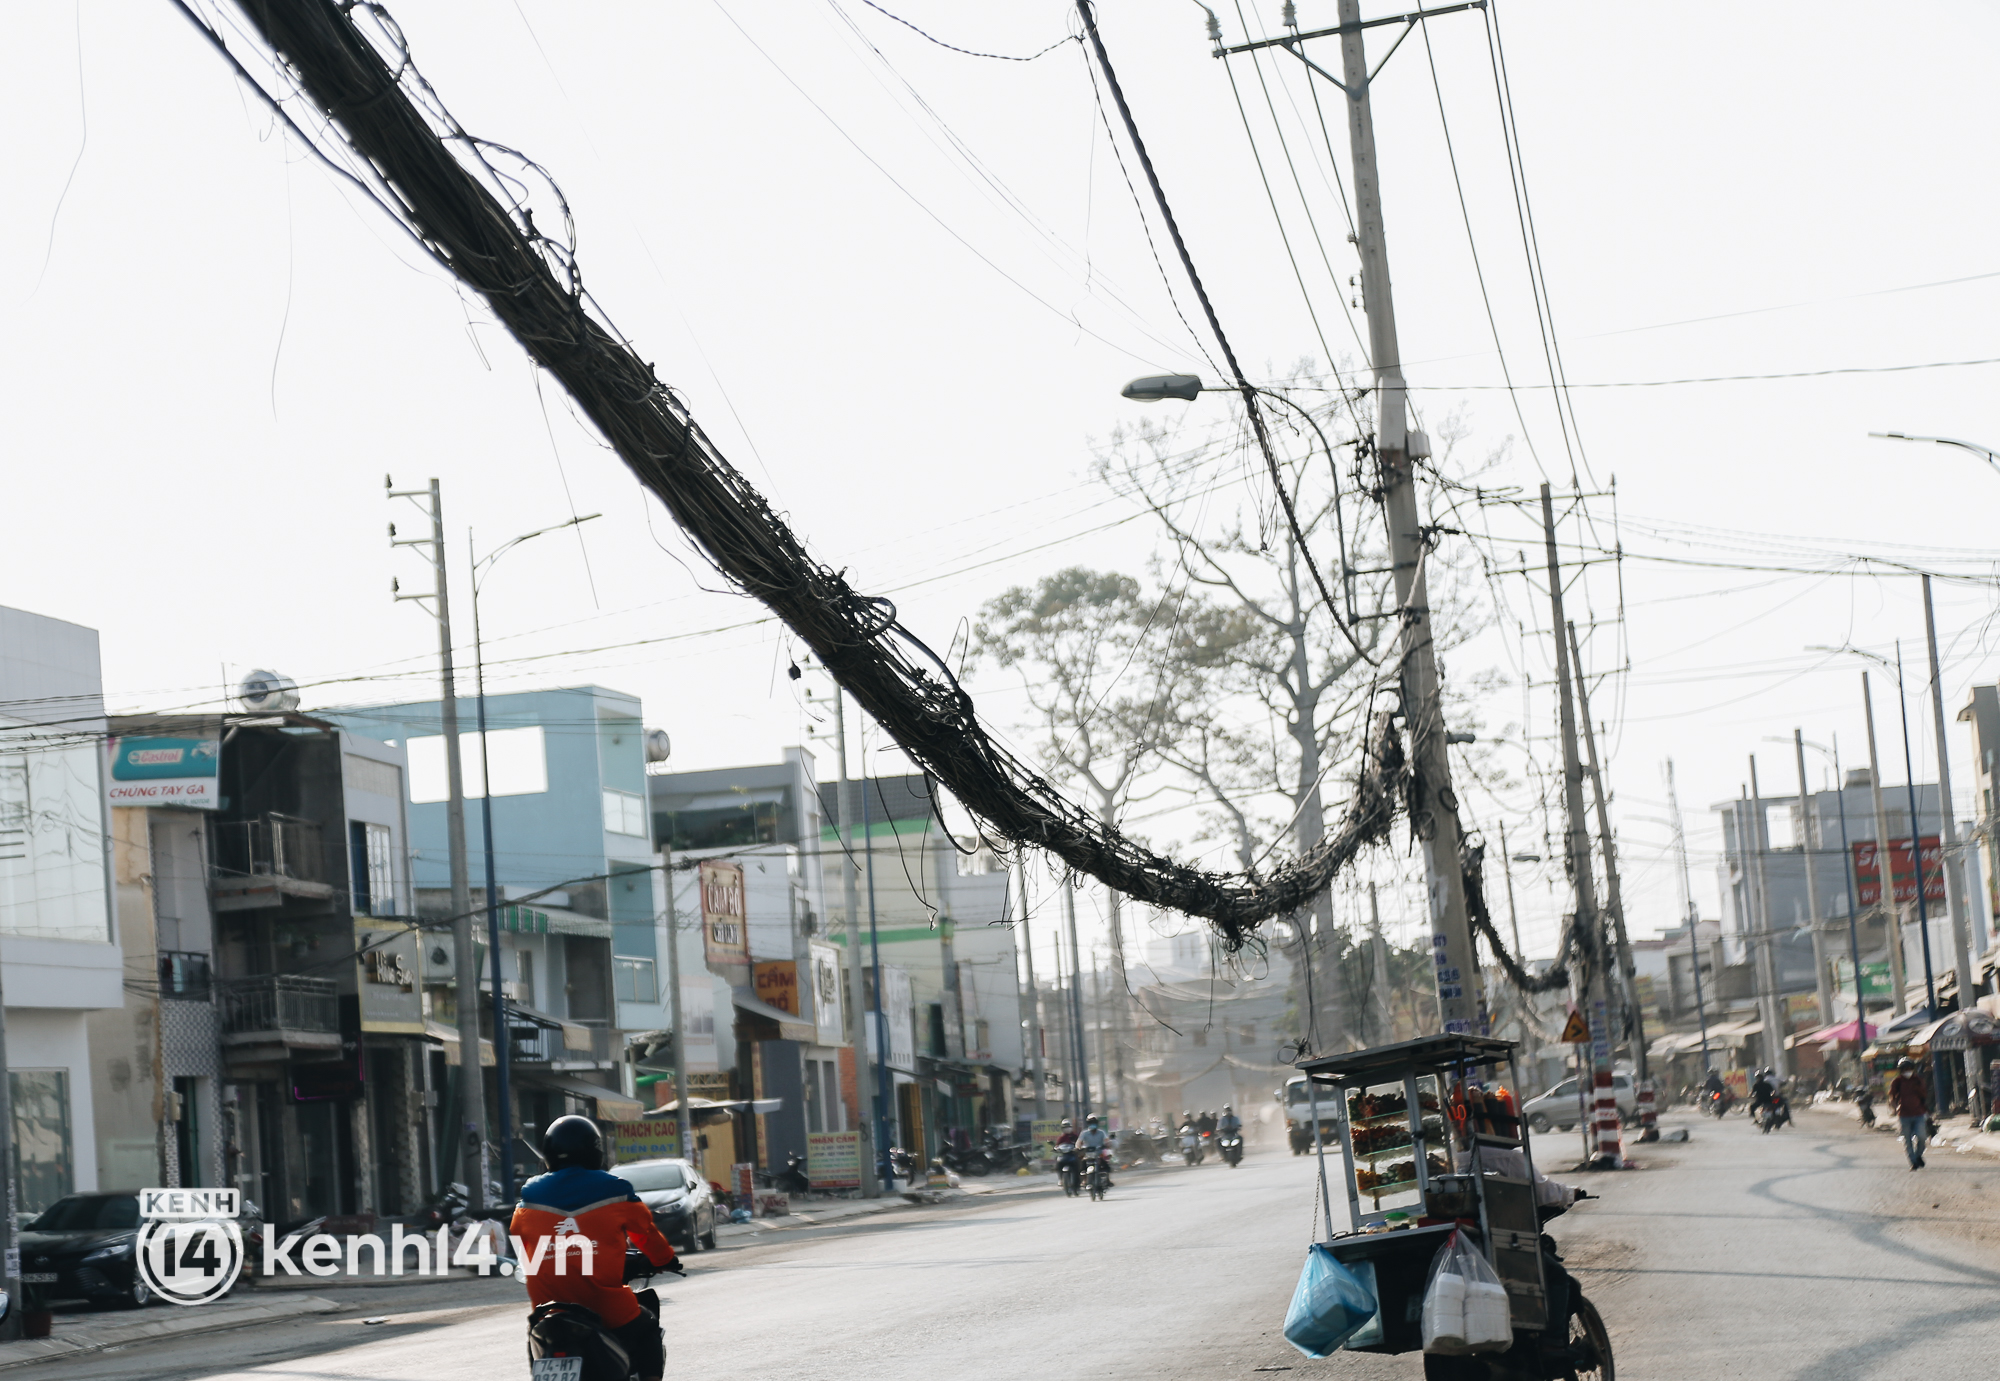 Hàng trăm cột điện bị bỏ quên giữa đường ở Sài Gòn, người dân nín thở luồn lách - Ảnh 6.